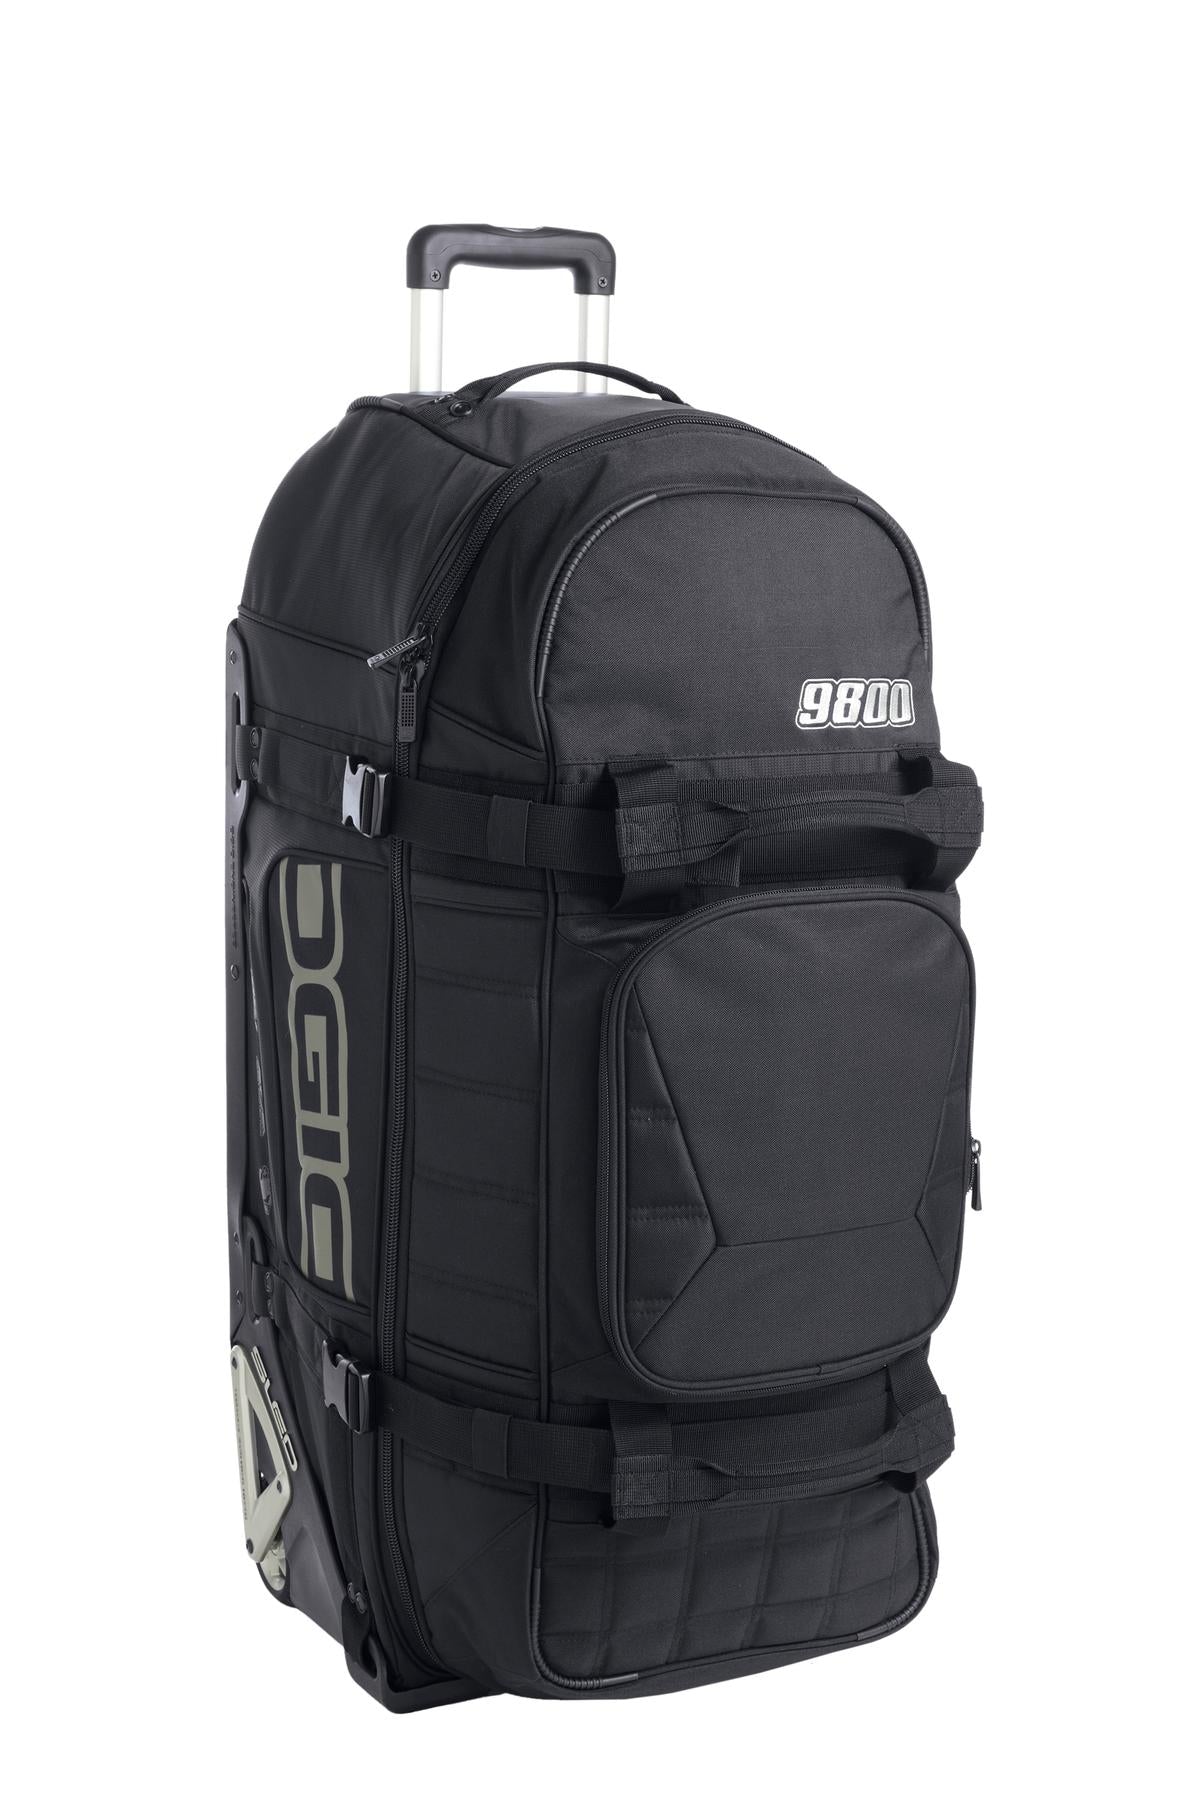 OGIO® - 9800 Travel Bag. 421001 - DFW Impression